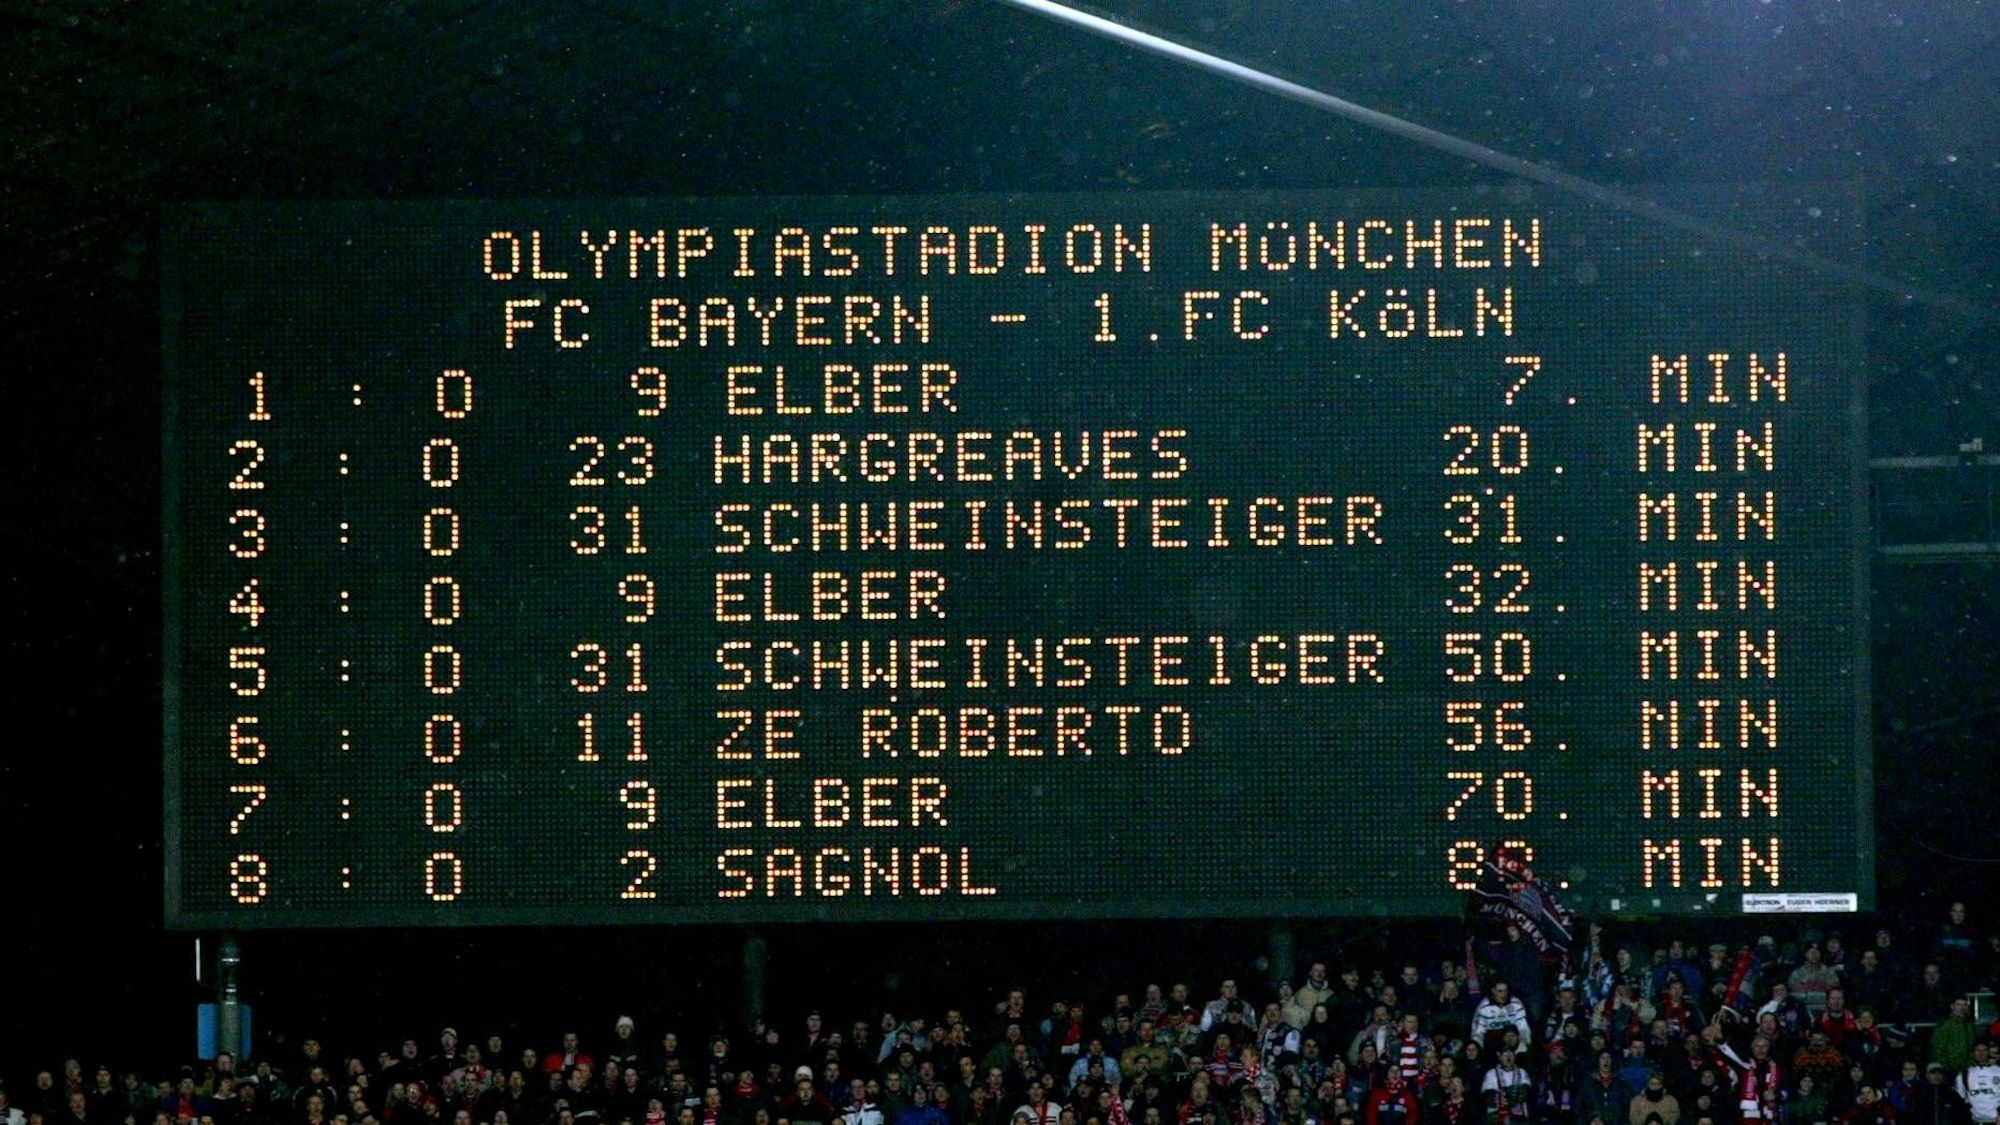 Auf der Anzeigetafel im Olympiastadion sind die Bayern-Torschützen namentlich aufgeführt: Giovanne Elber mir drei Treffern, Bastian Schweinsteiger mit zwei Treffern, Owen Hargreaves, Willy Sagnol und Zé Roberto mit je einem Treffer.